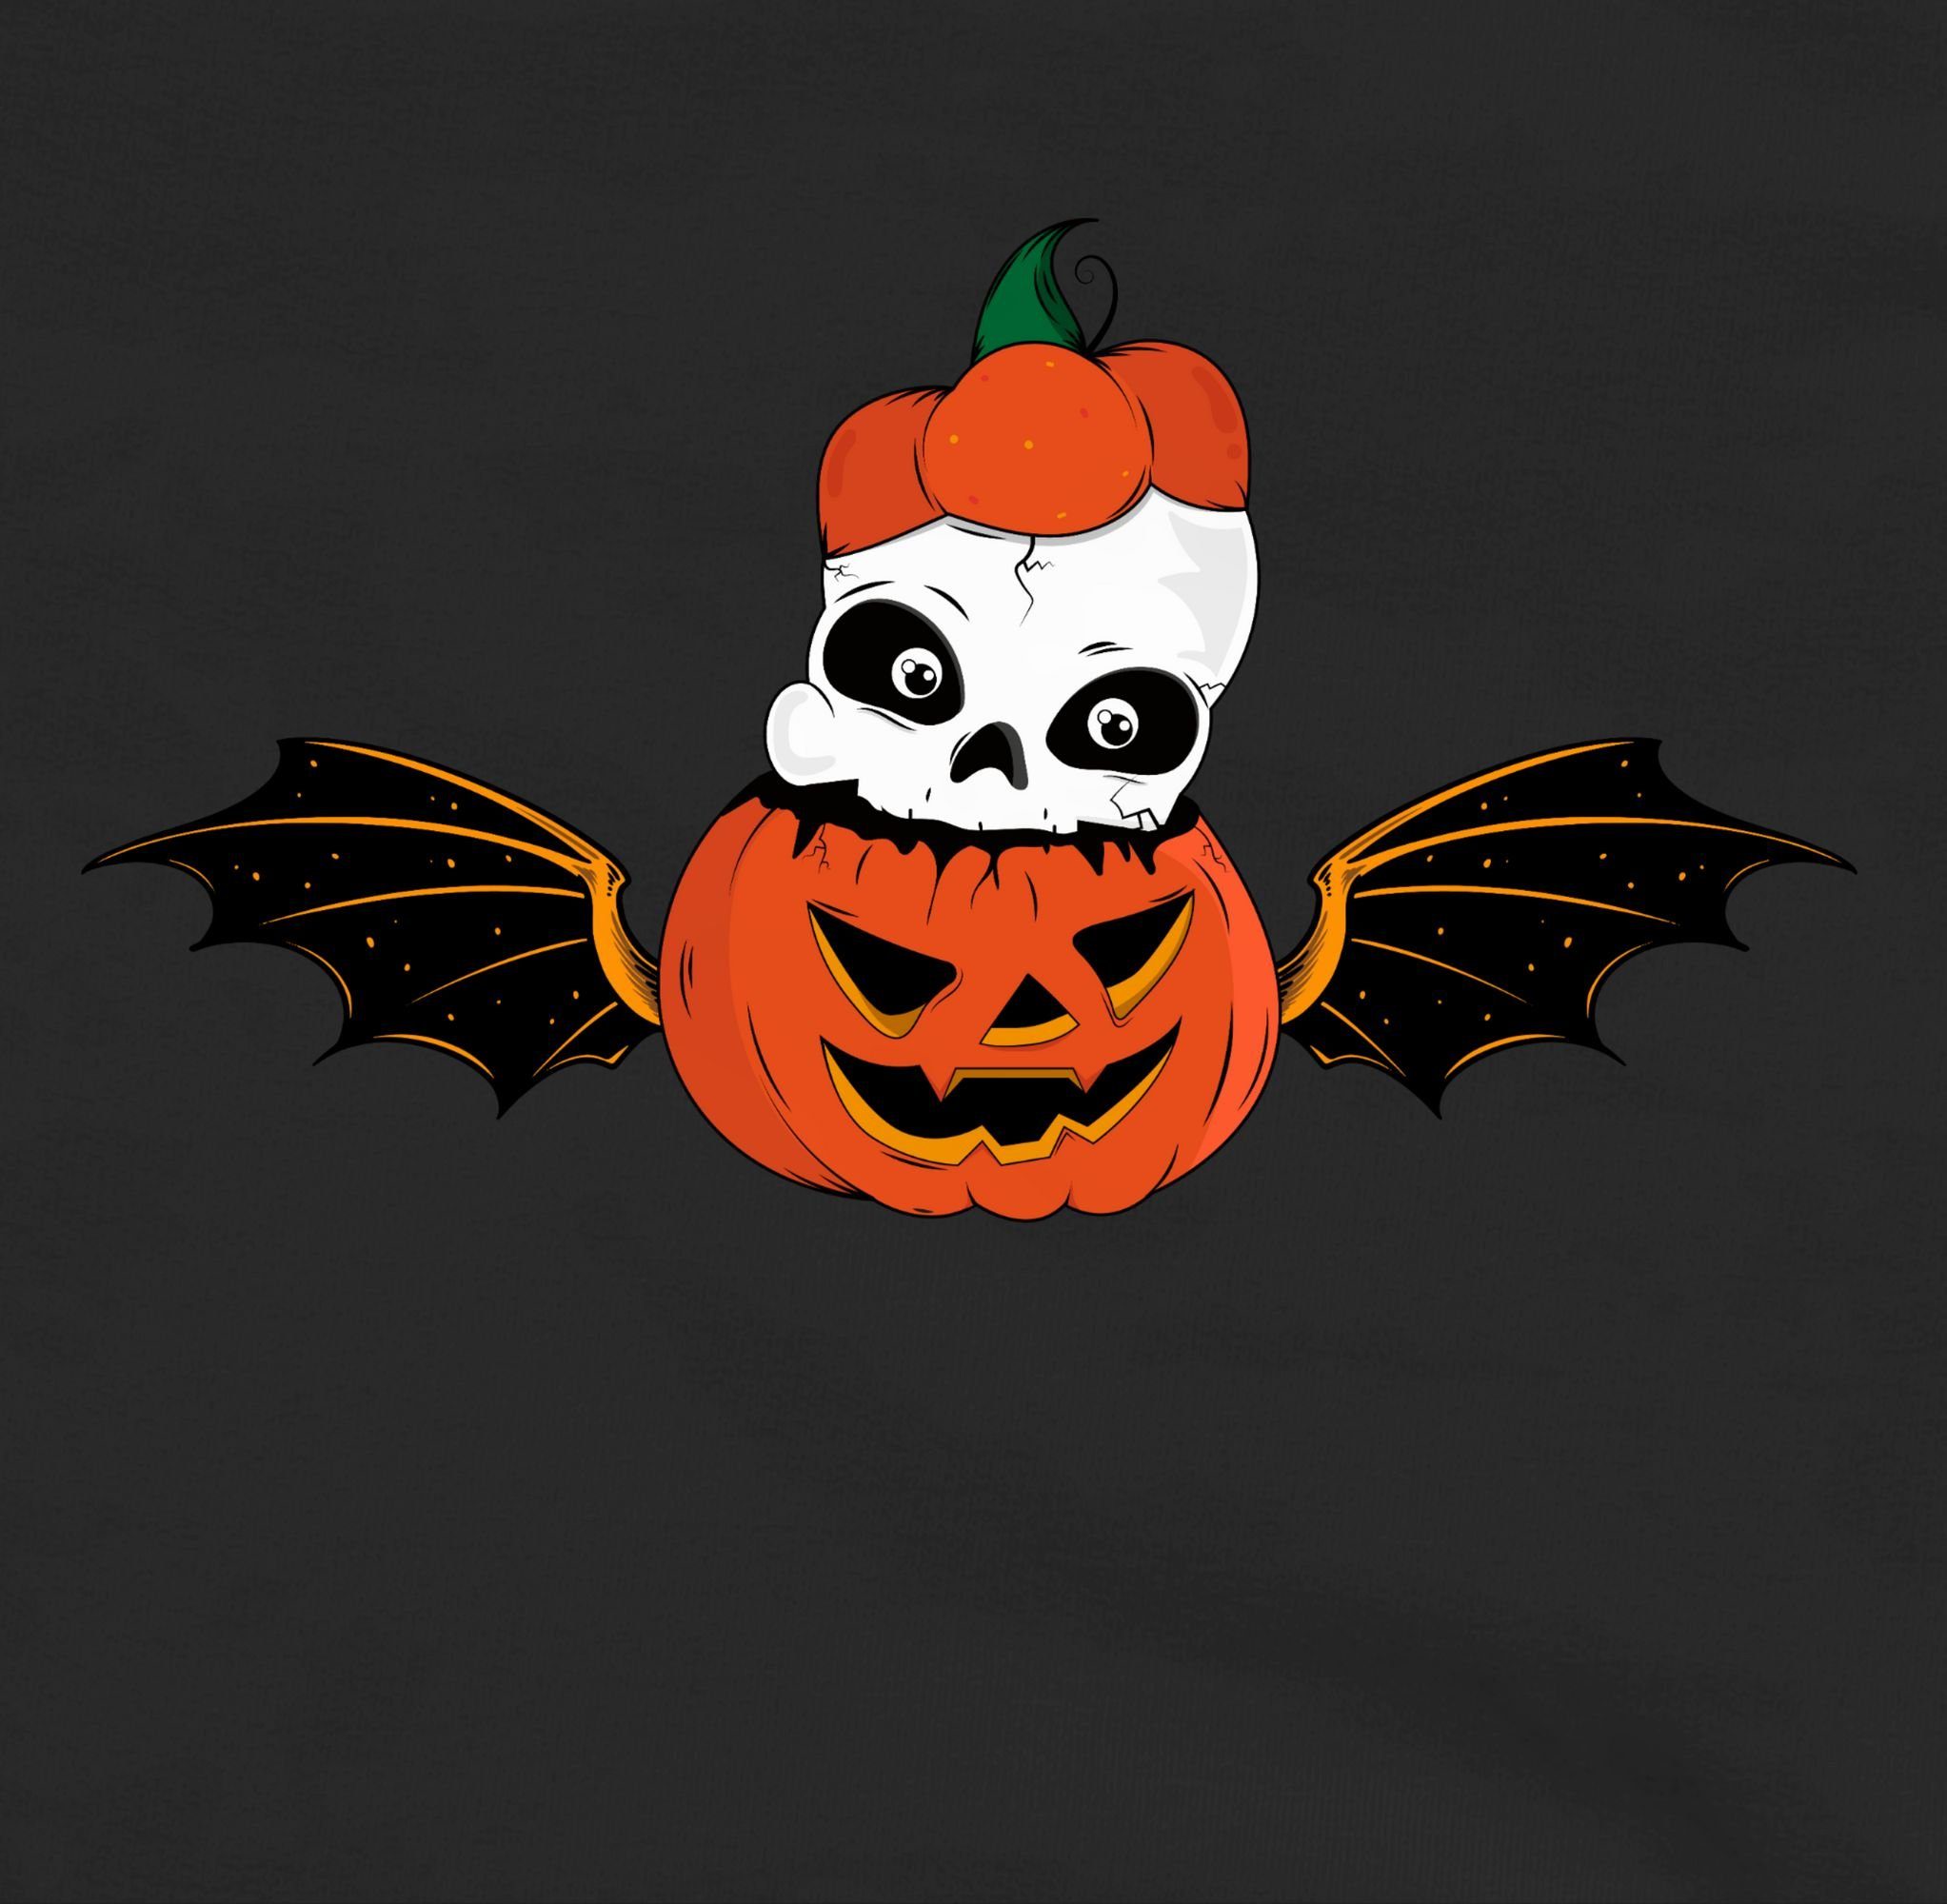 Kürbis Kürbisgesicht Kostüme Totenkopf Shirtracer Hoodie Halloween Skelett Kinder für meliert Fledermaus 2 Schwarz/Grau